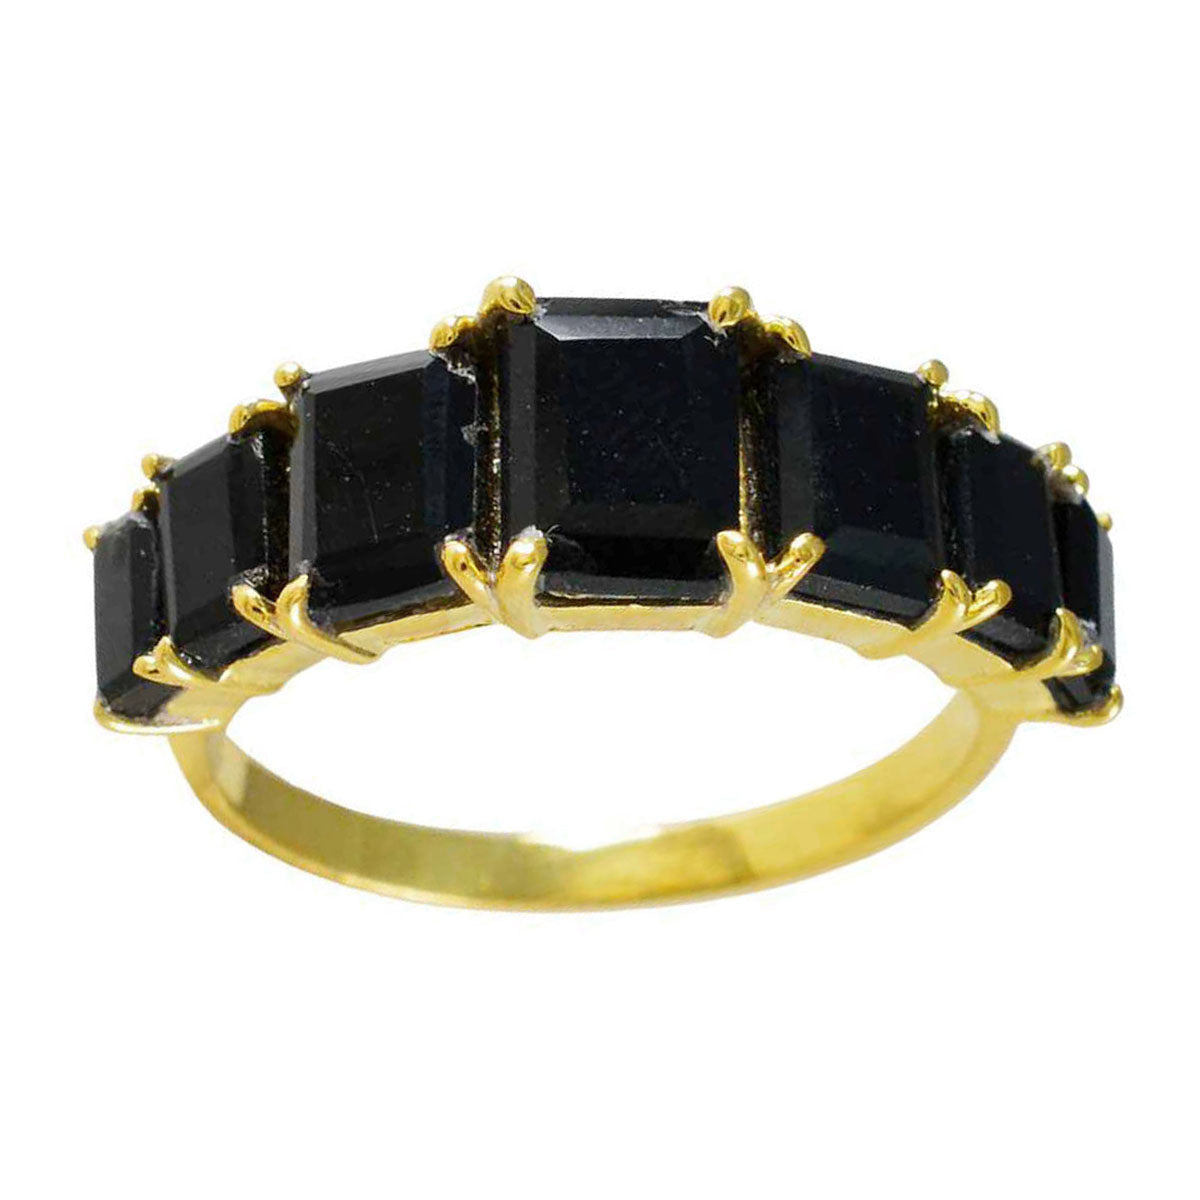 Riyo Exporteur Silberring mit Gelbgoldbeschichtung, schwarzer Onyx-Stein, achteckige Krappenfassung, Modeschmuck, Black-Friday-Ring